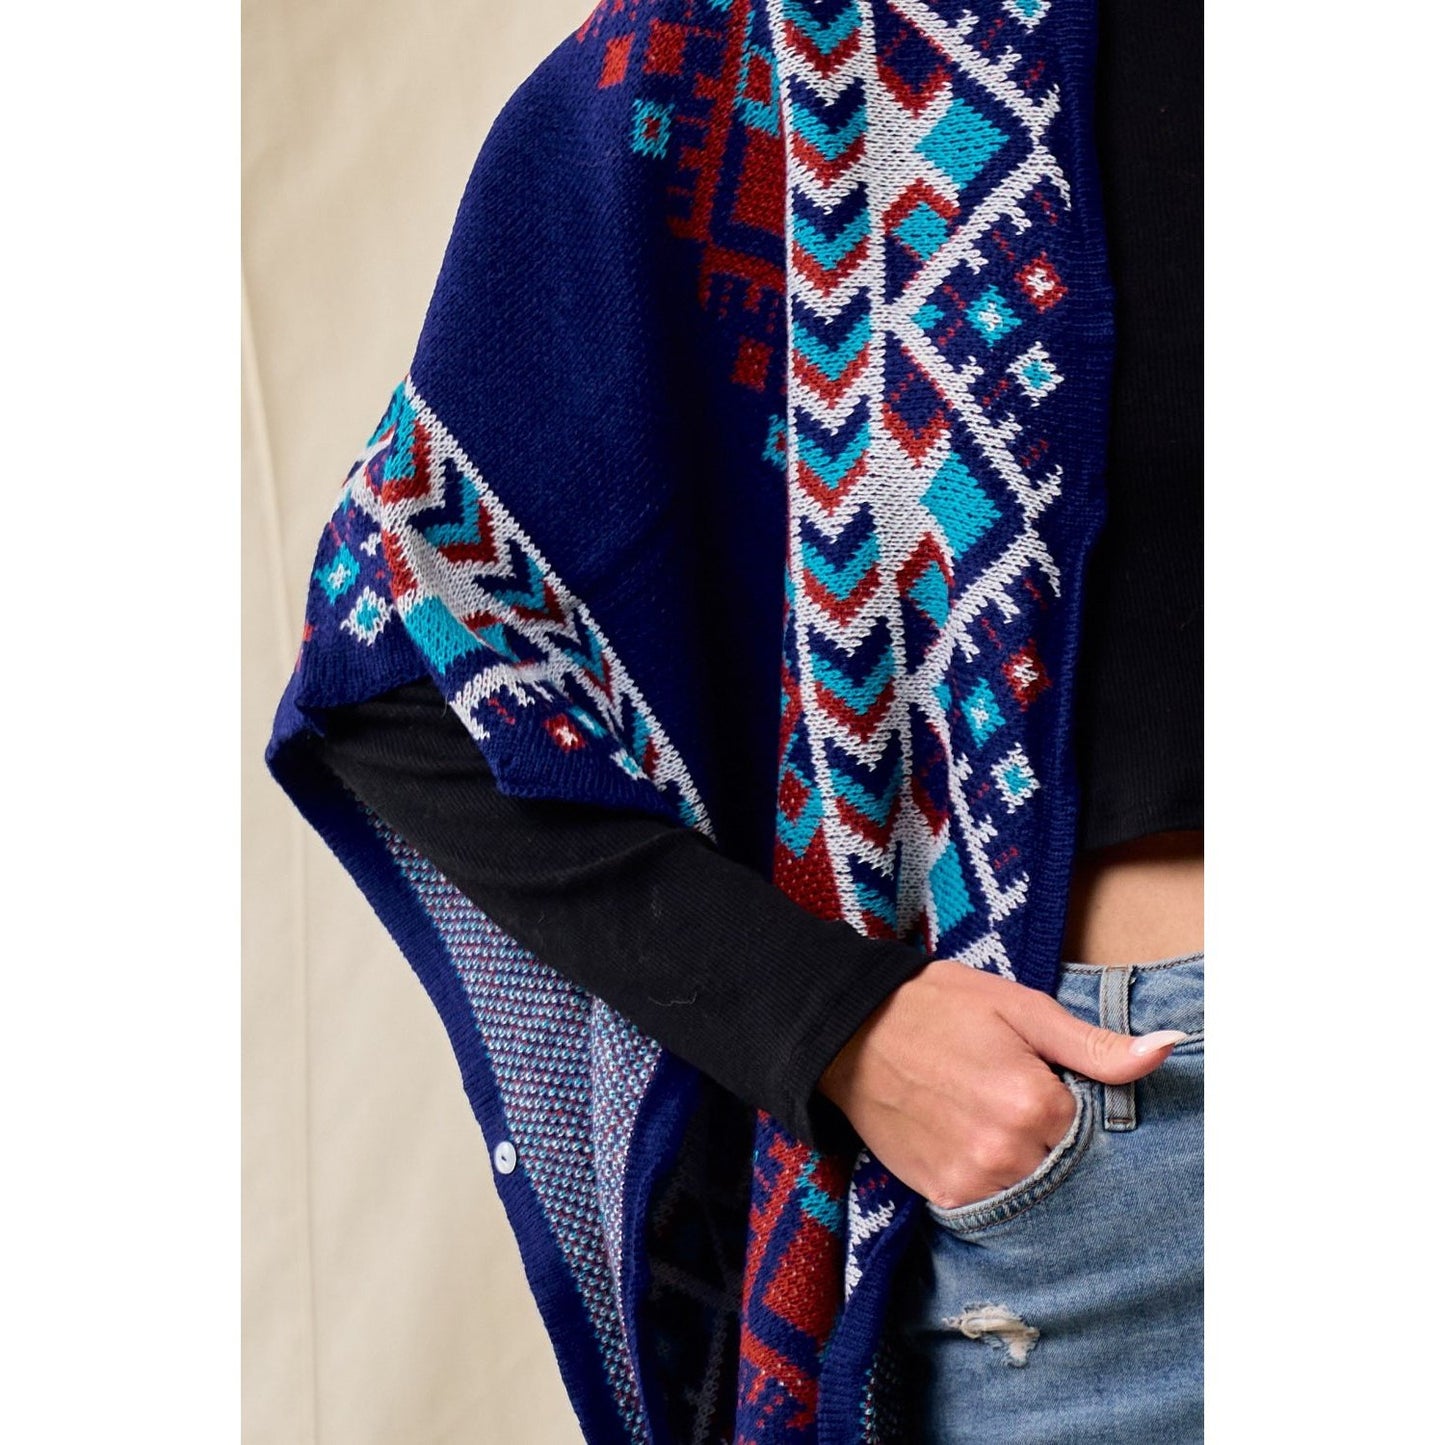 Izel Sweater Shawl Wrap with Aztec Pattern